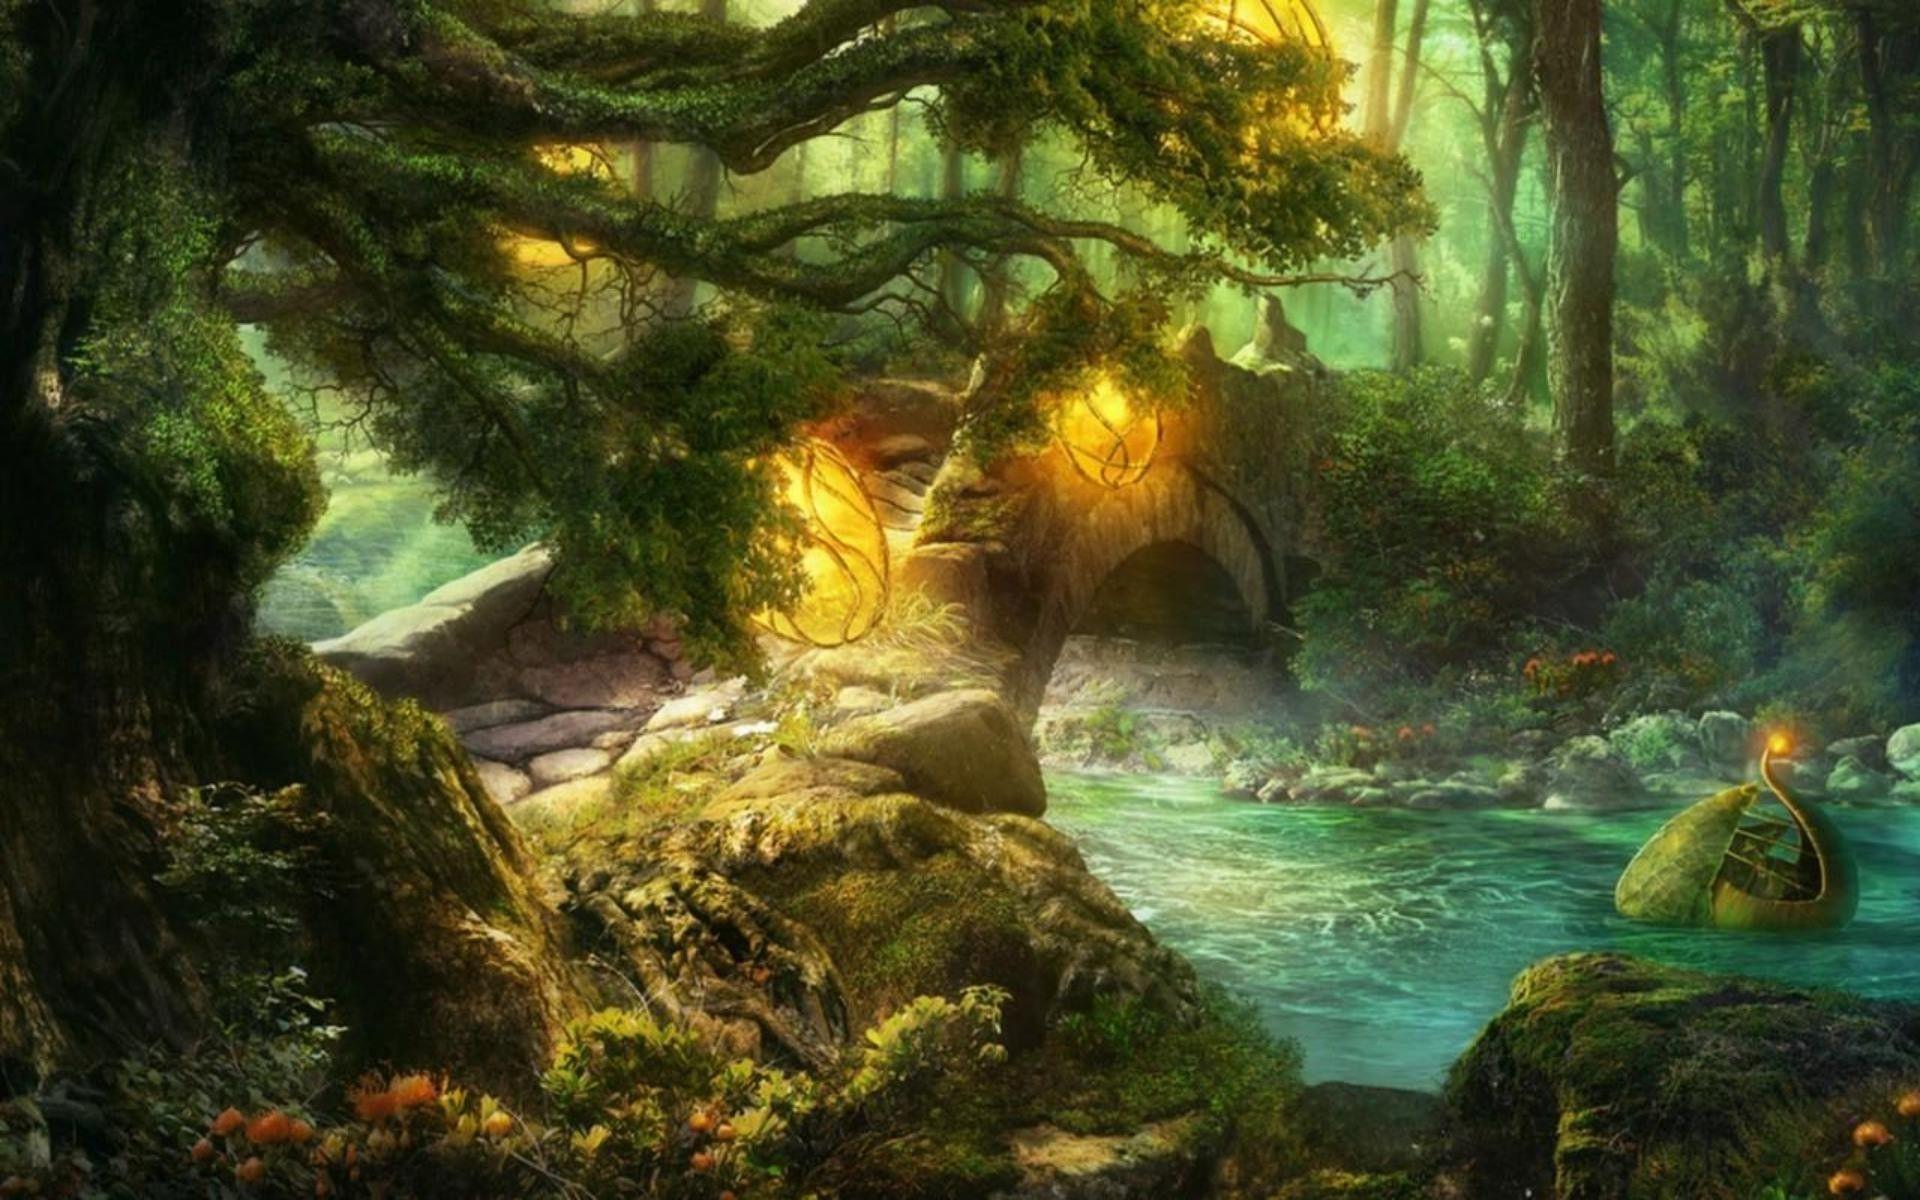 Stone bridge in fairytale forest wallpaper #